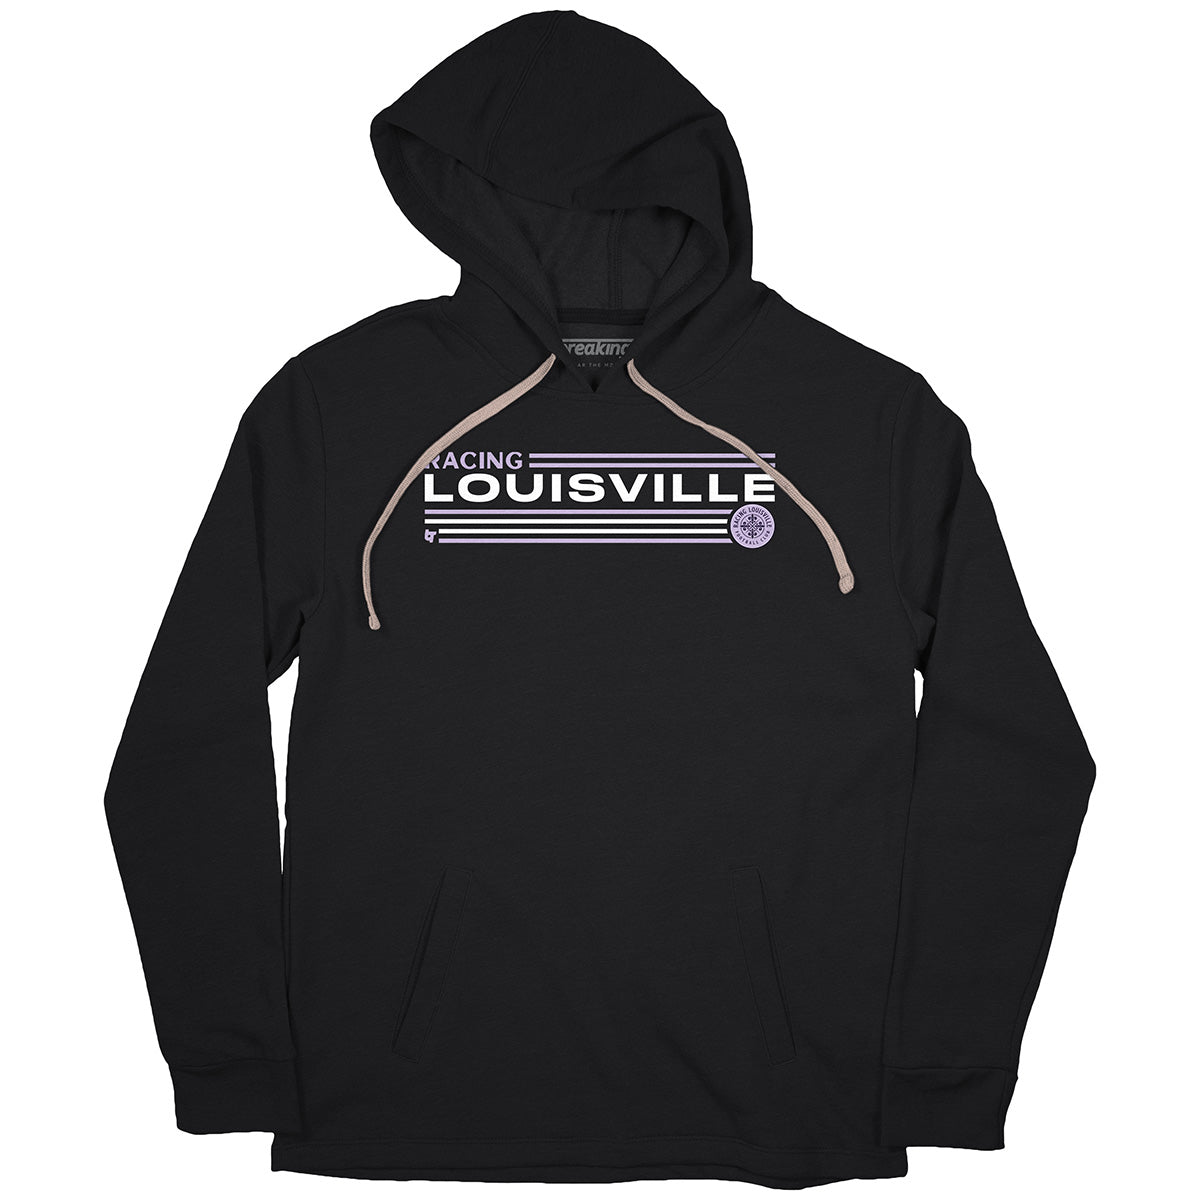 louisville hoodie kids